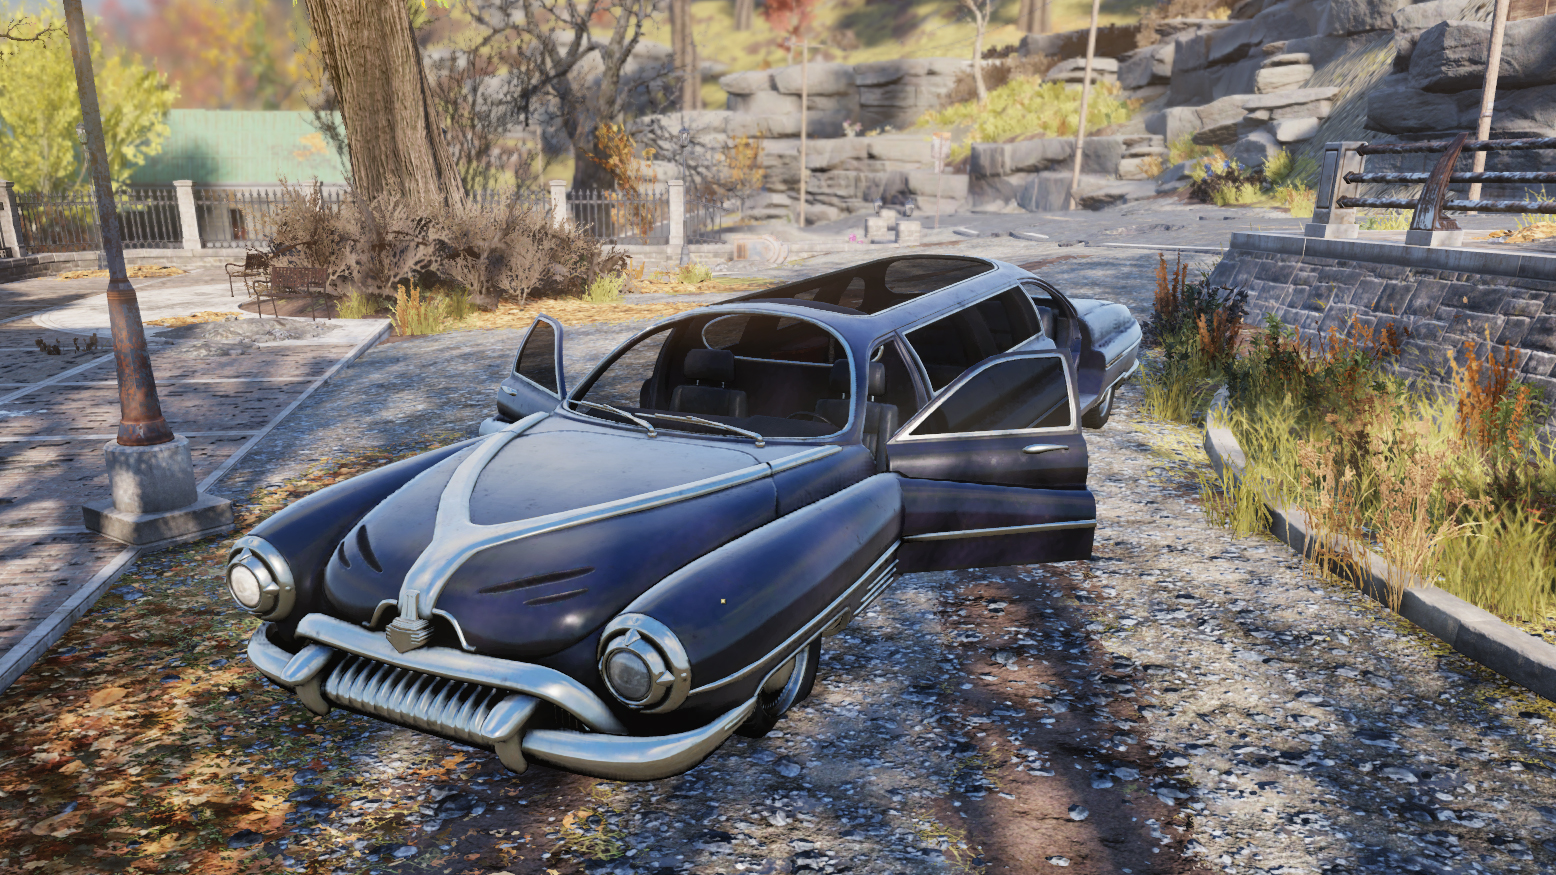 Limousine) - игровой объект, довоенное транспортное средство Fallout 76. 